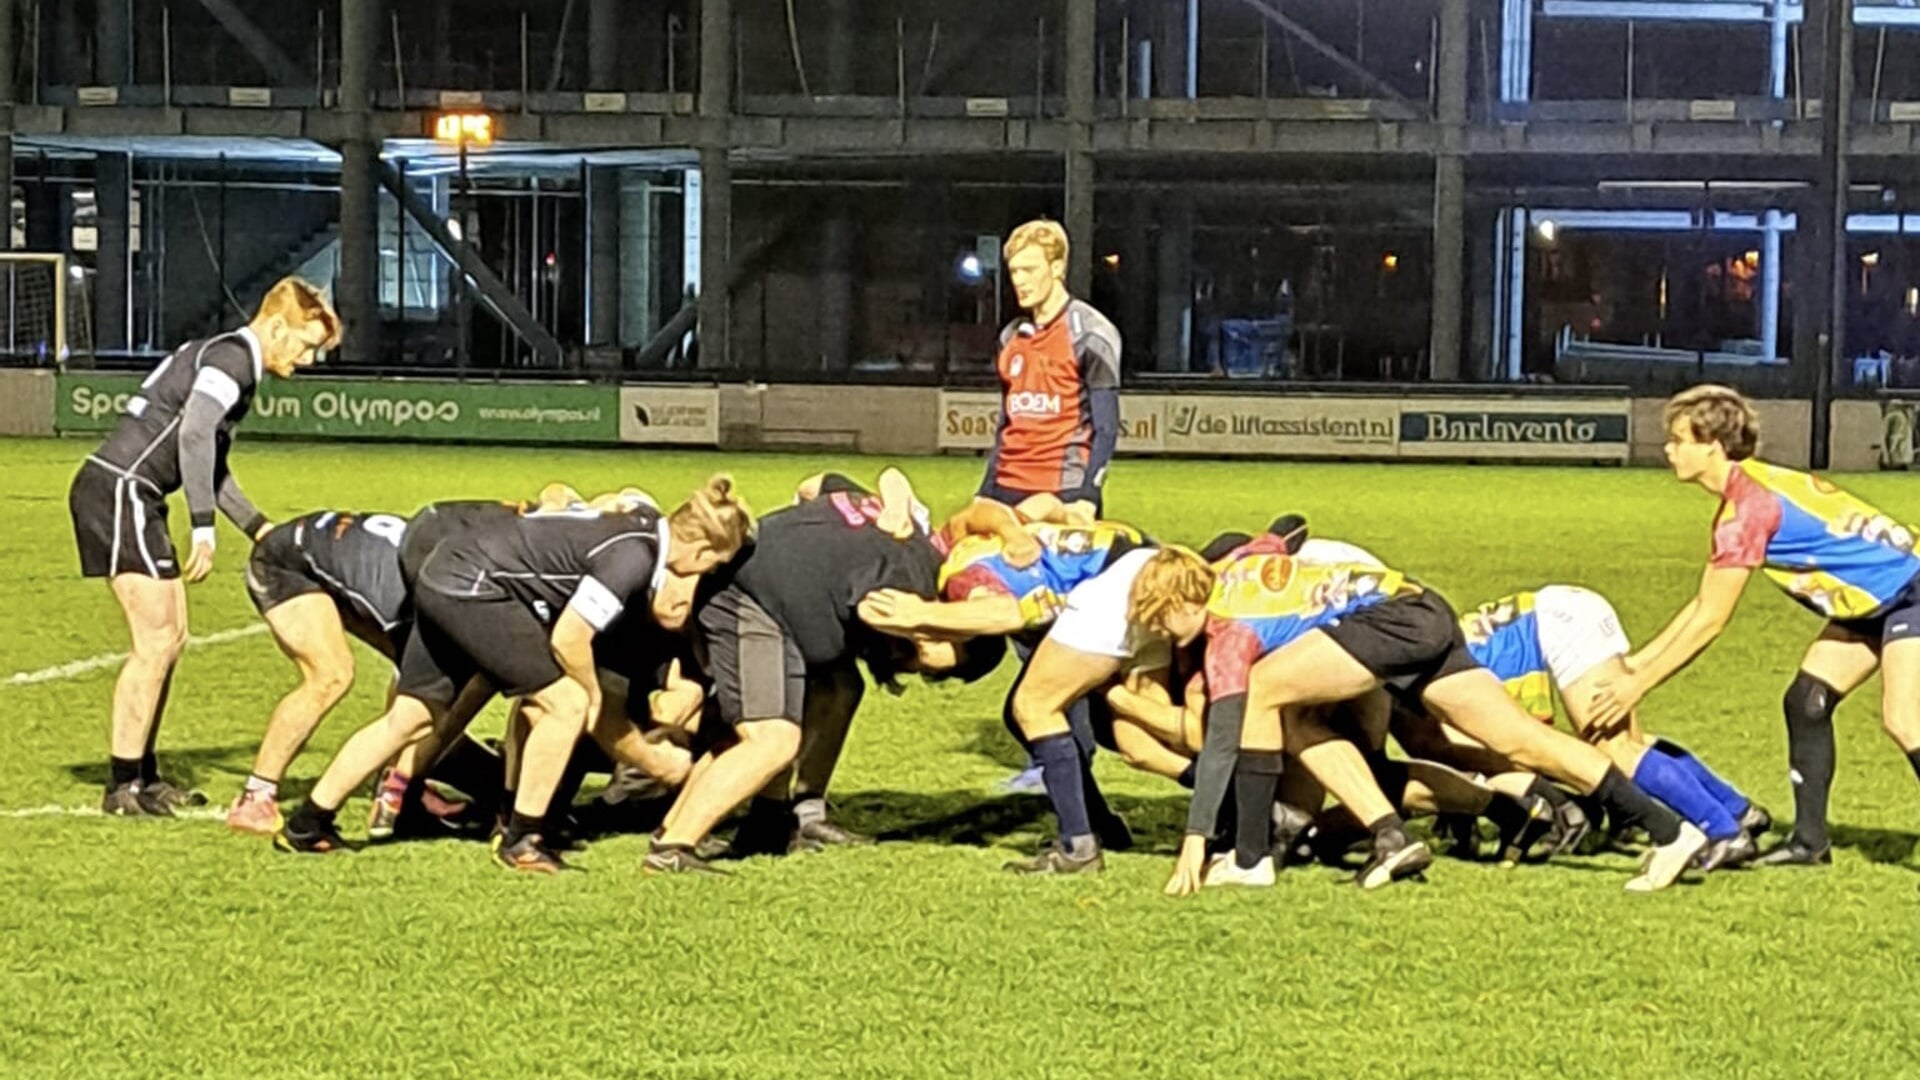 Onlangs speelden de deelnemers een oefenwedstrijd bij rugbyclub Utrechtse Studenten. 'Dat ging boven verwachting goed', aldus deelnemer Jerry.